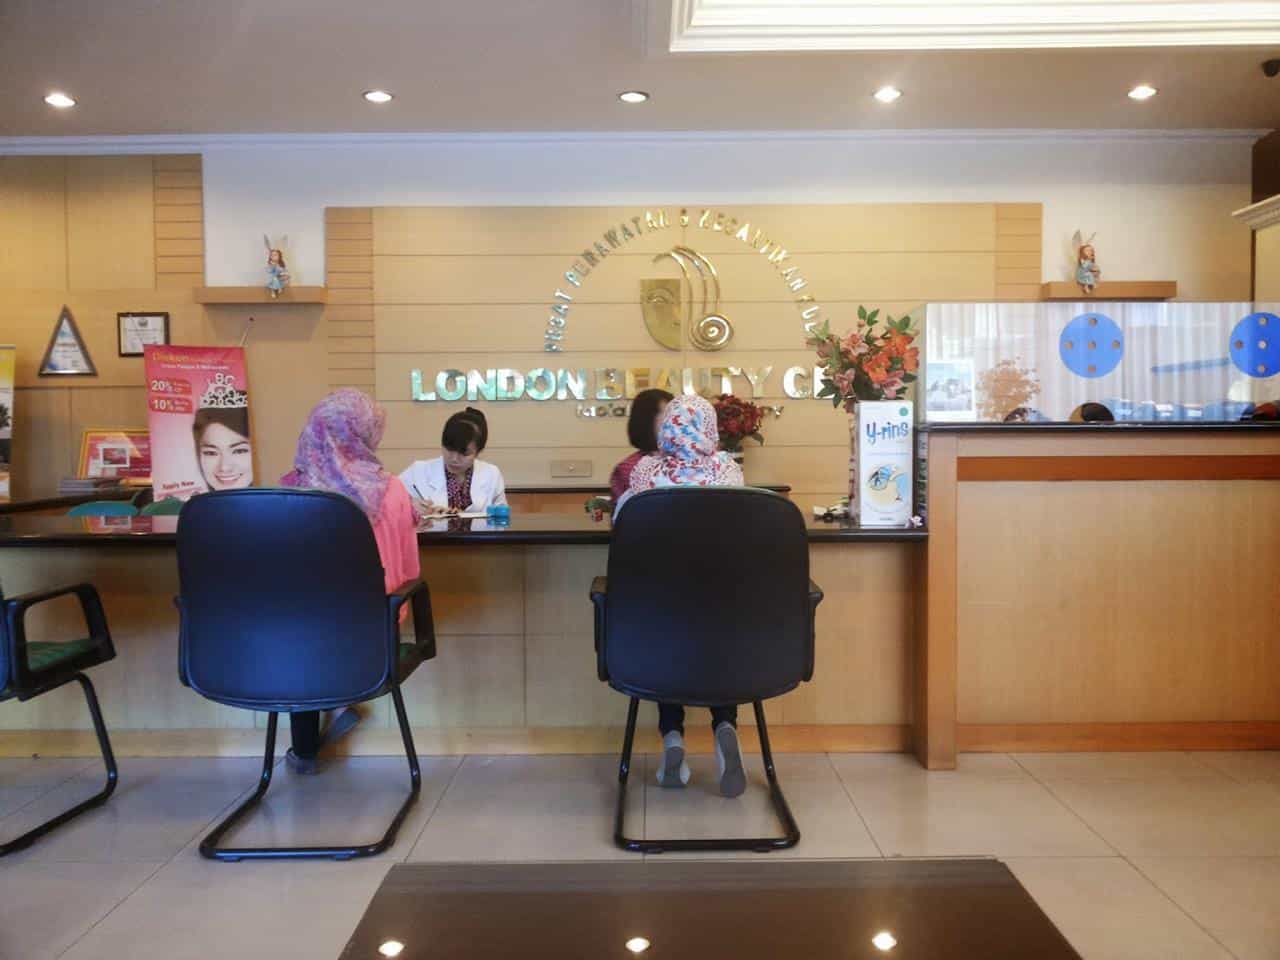 London Beauty Center Bandung